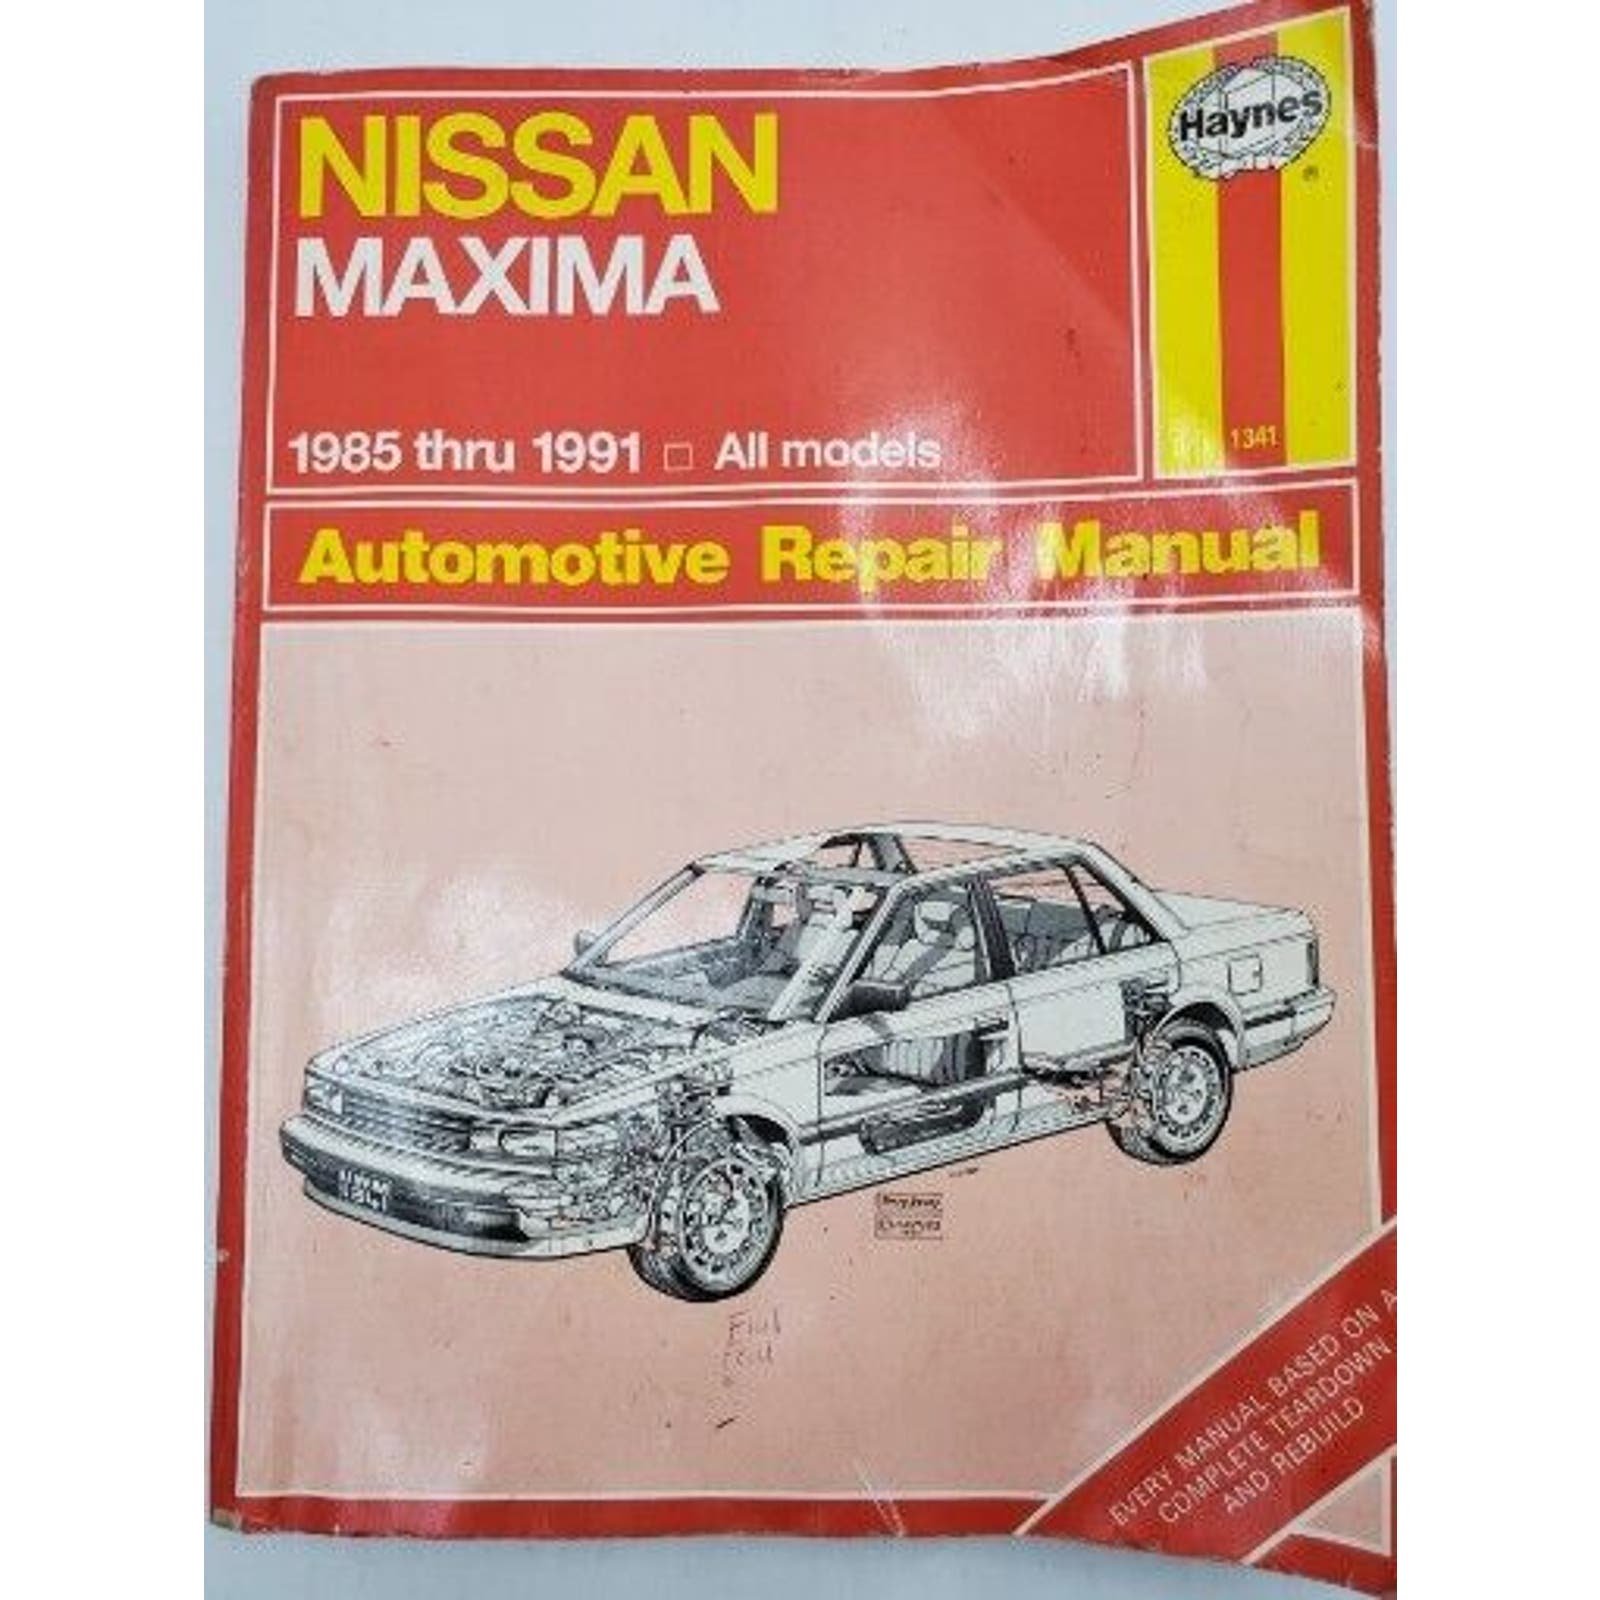 Haynes Repair Manual Nissan Maxima 1985-1991 All Models oVXV7X7II